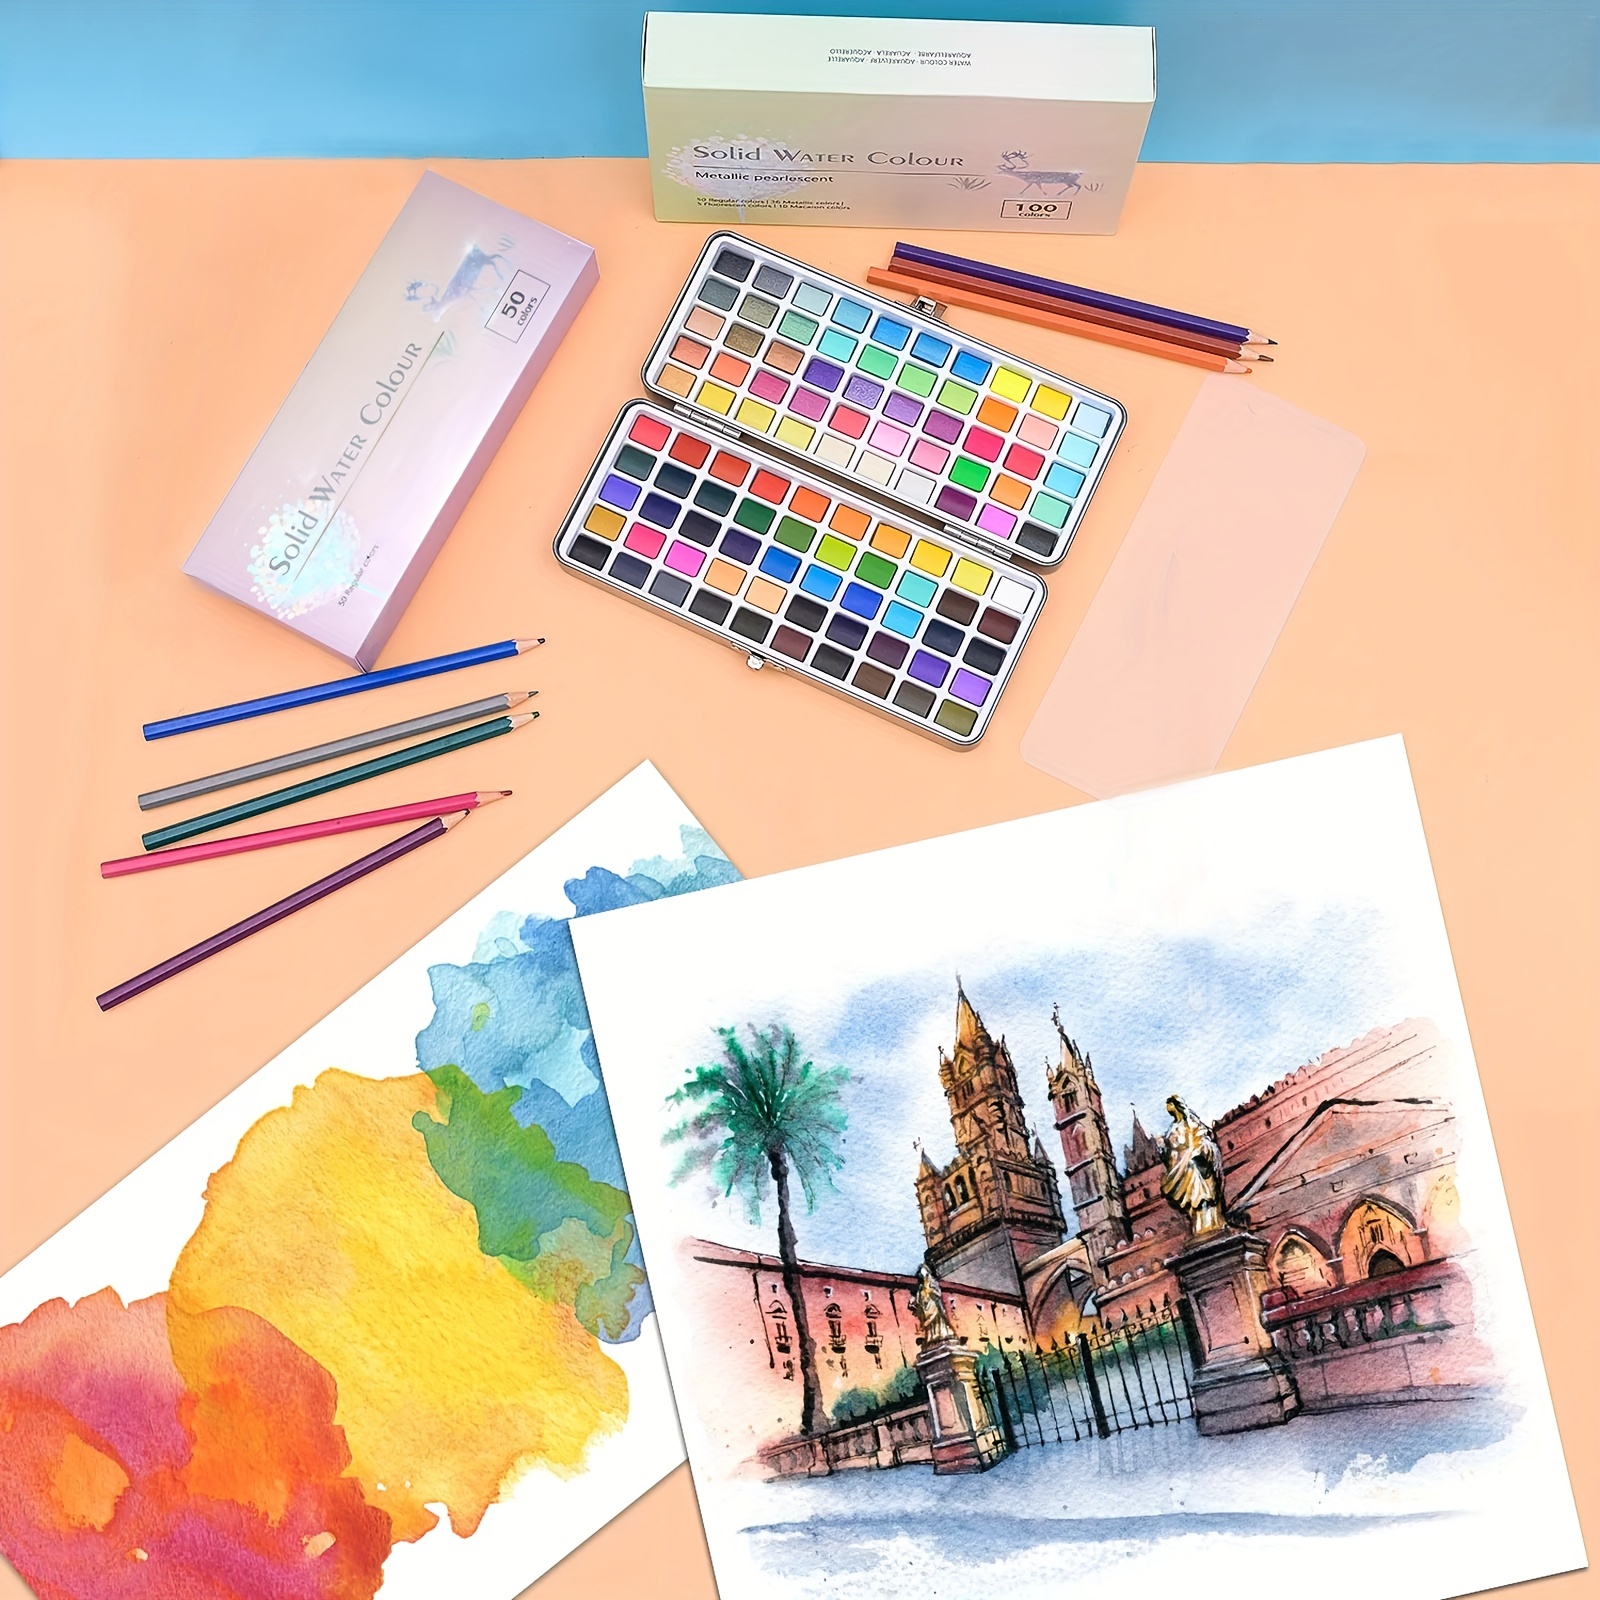 KIT DE ARTE Y PINTURA para niños suministros de dibujo Paquete de arte y  pint